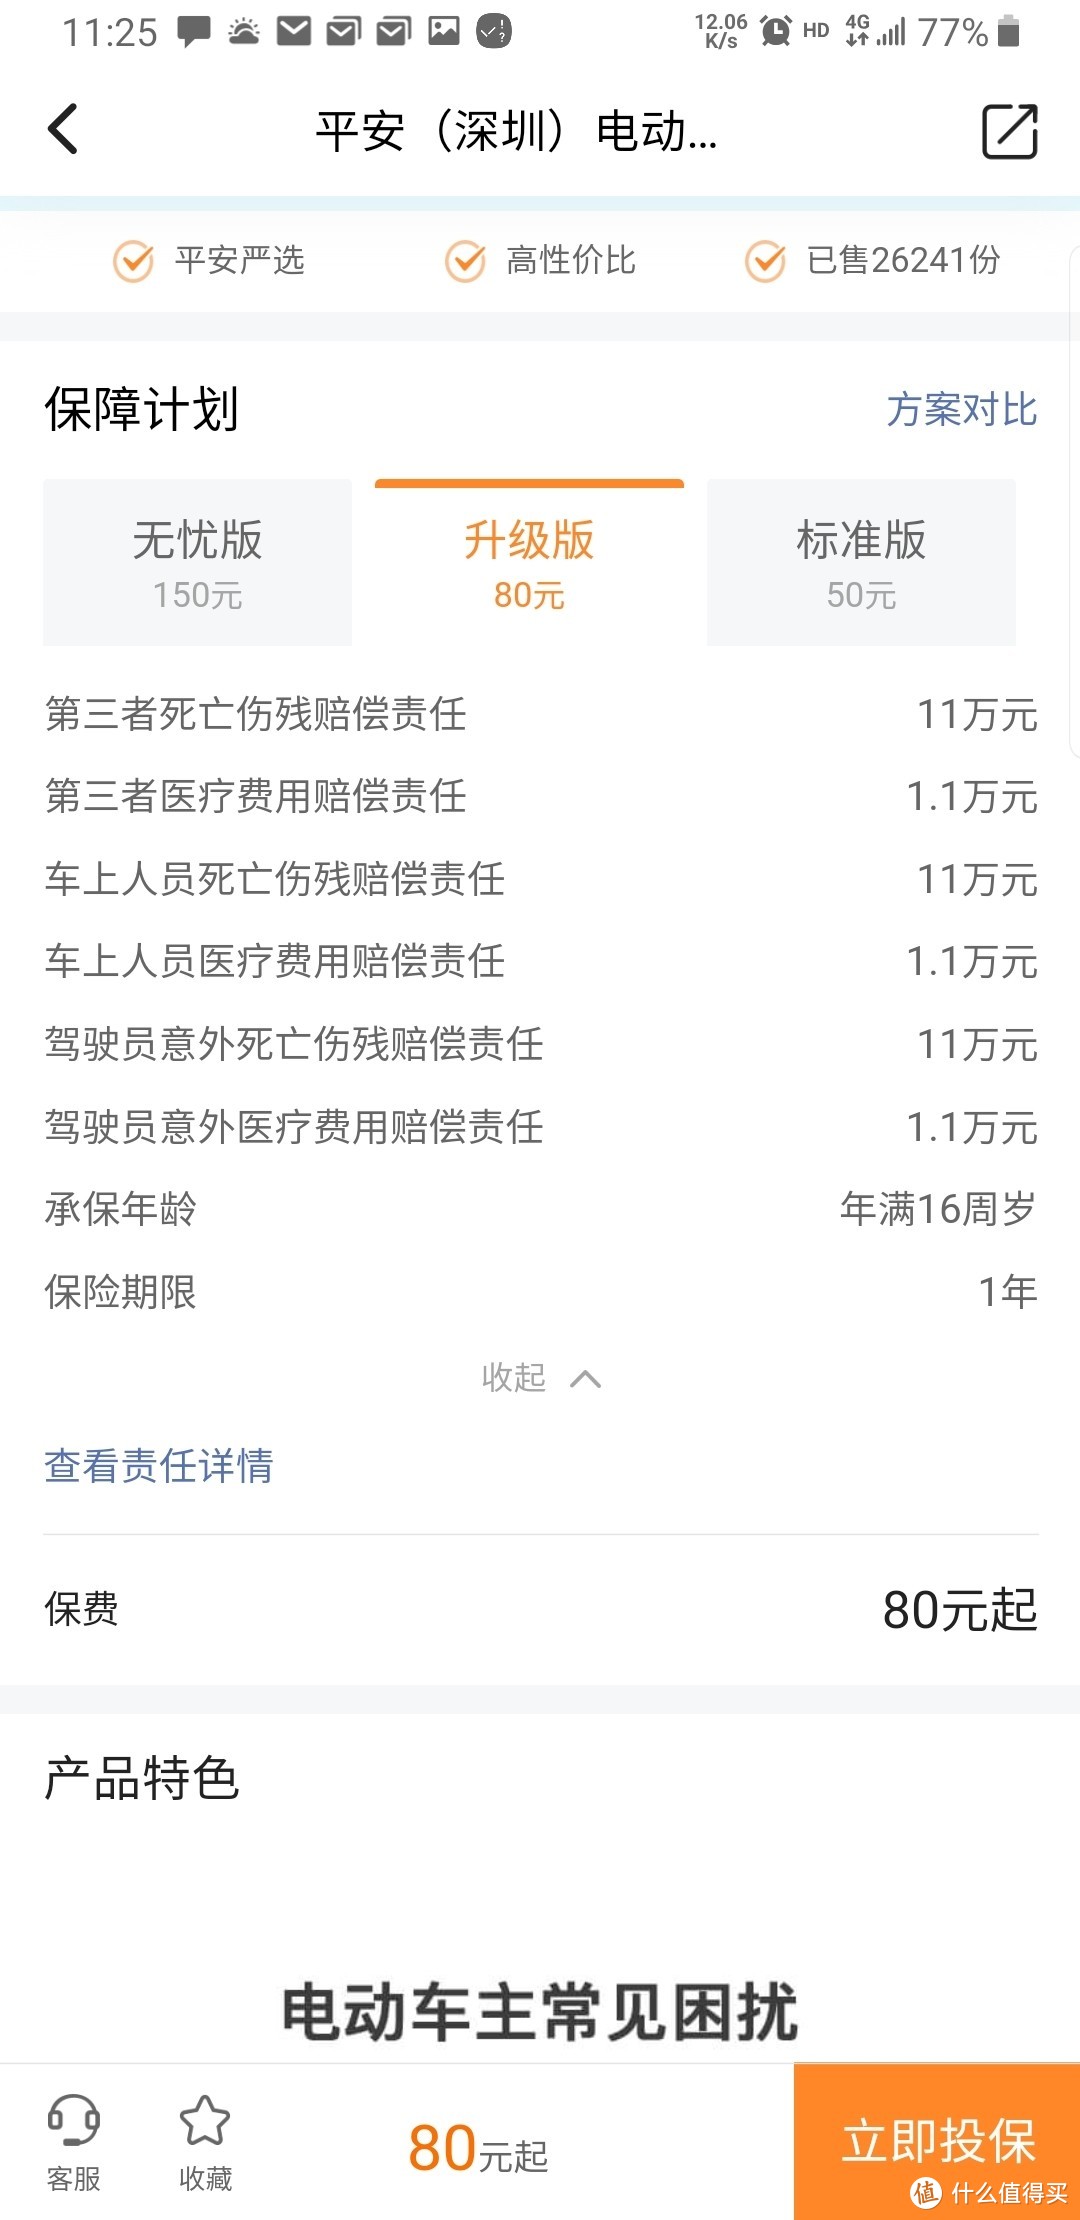 深圳电动自行车上牌过程流水记录，总耗时5小时，费用85元